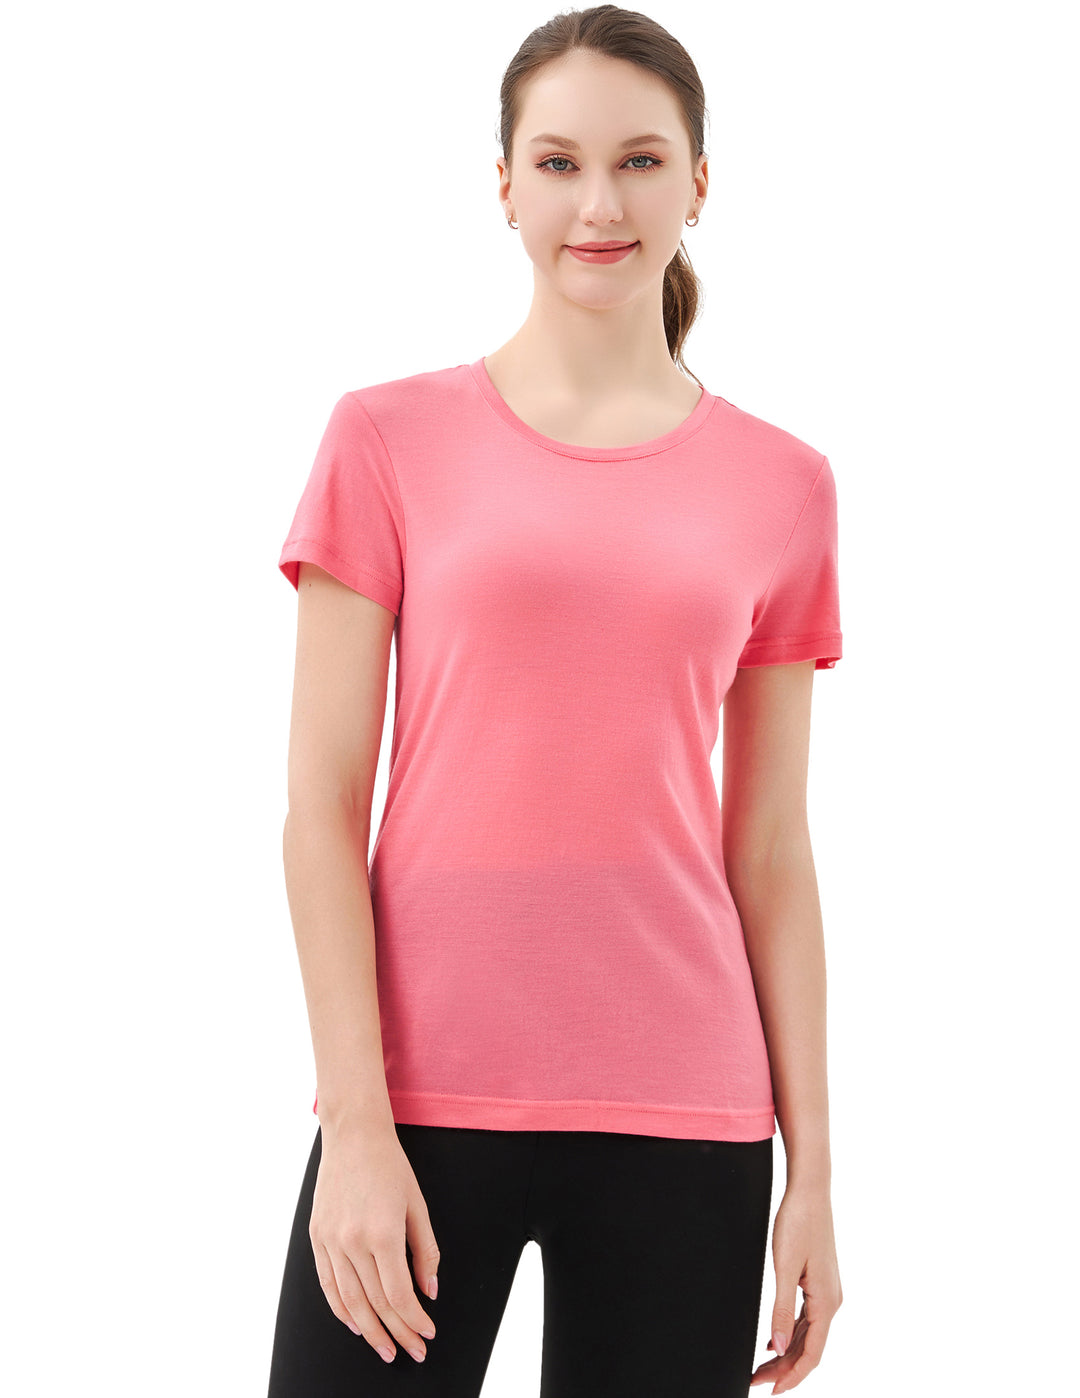 Women’s 100% Merino Wool T-Shirt Pink - MT28